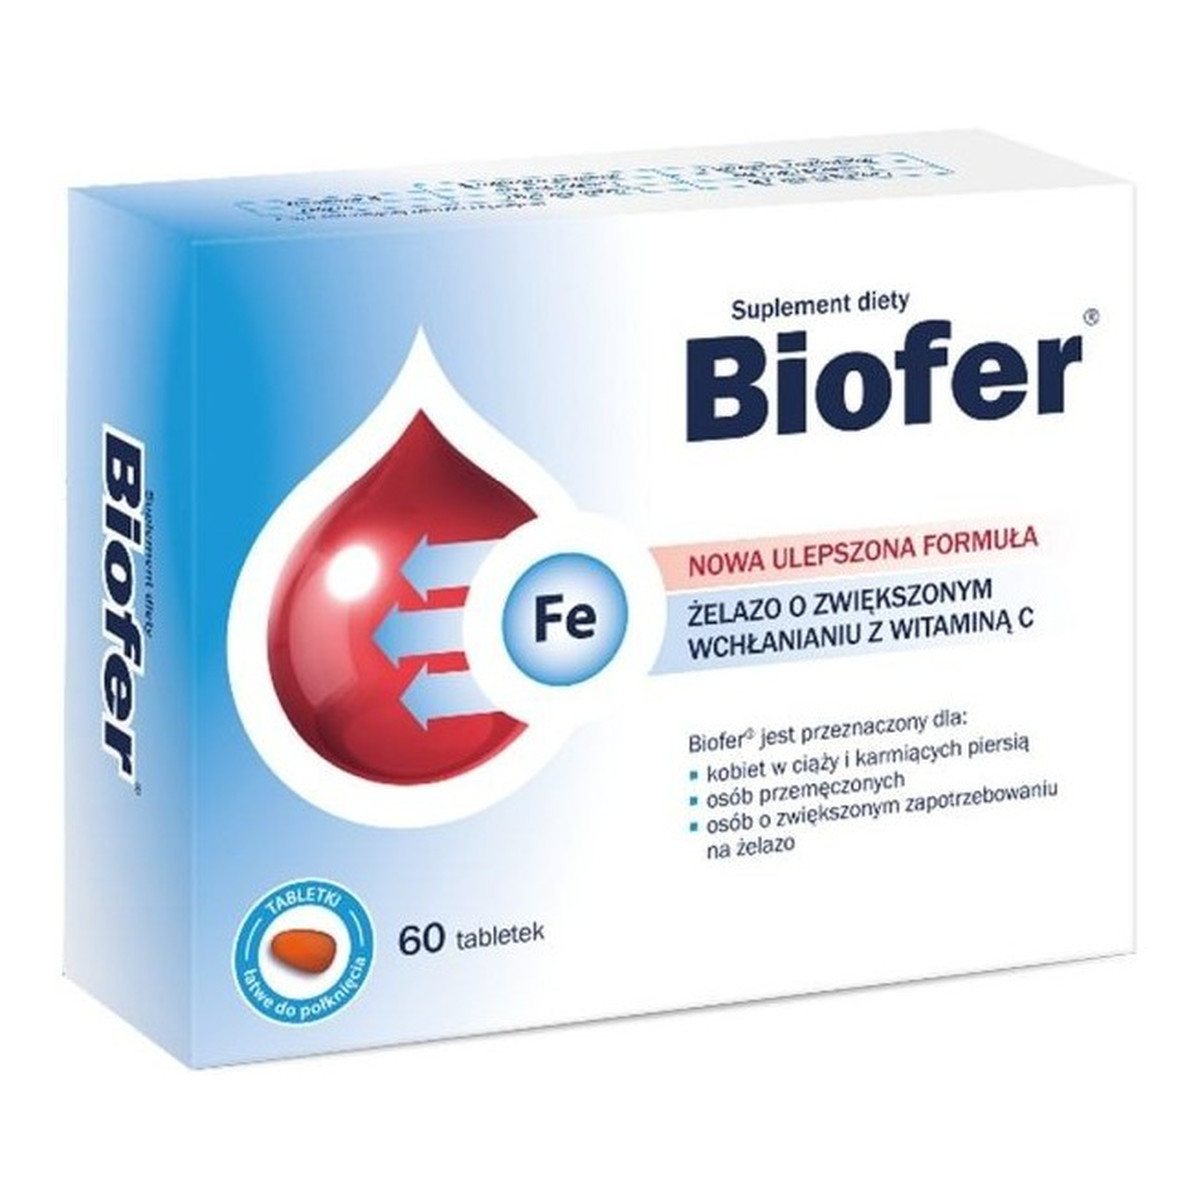 Biofer Żelazo o zwiększonym wchłanianiu z witaminą C 60 tabletek